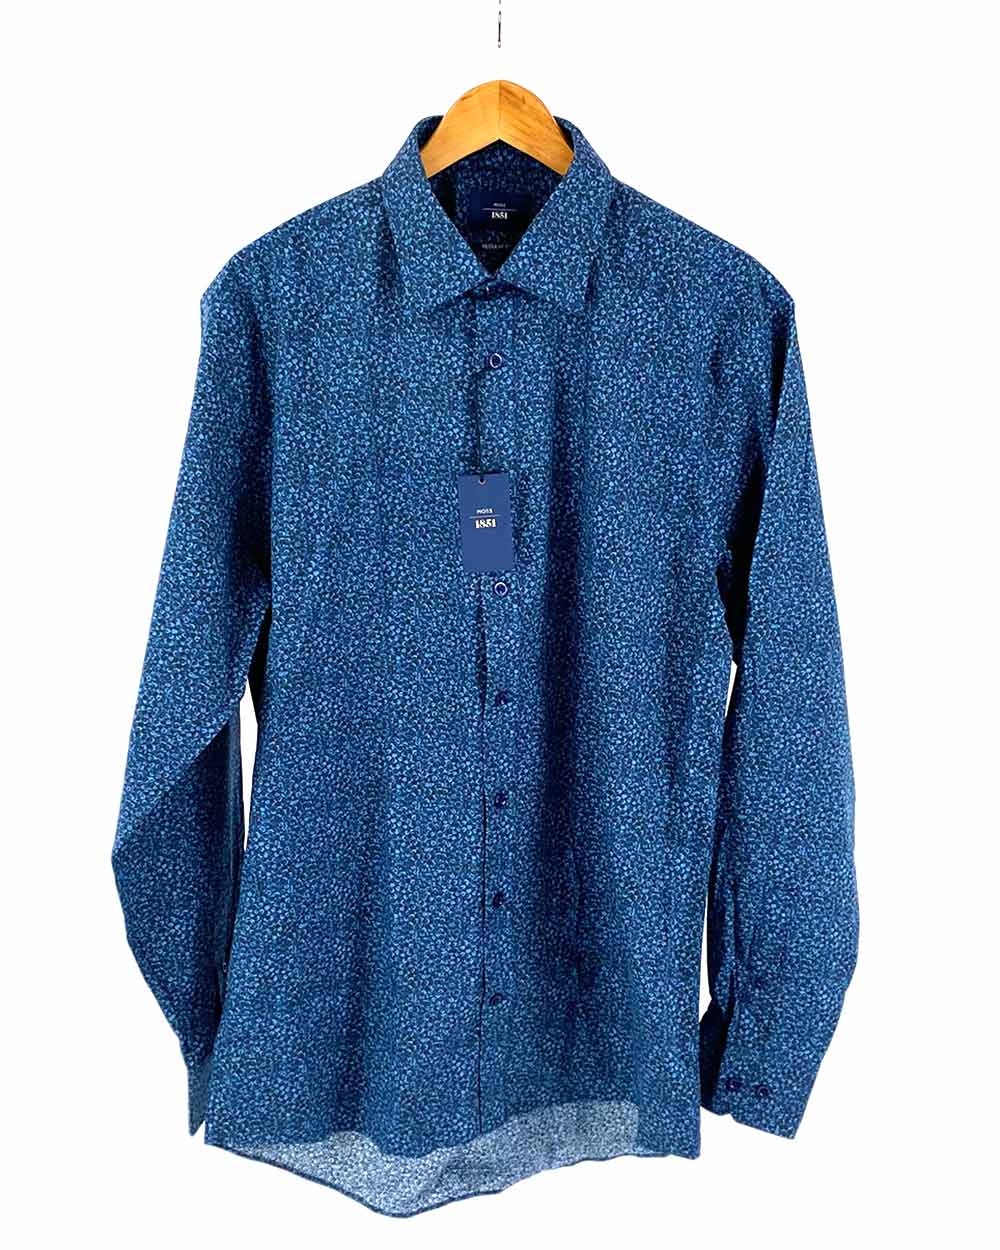 Moss Bros Patterned Blue Shirt Reg Fit